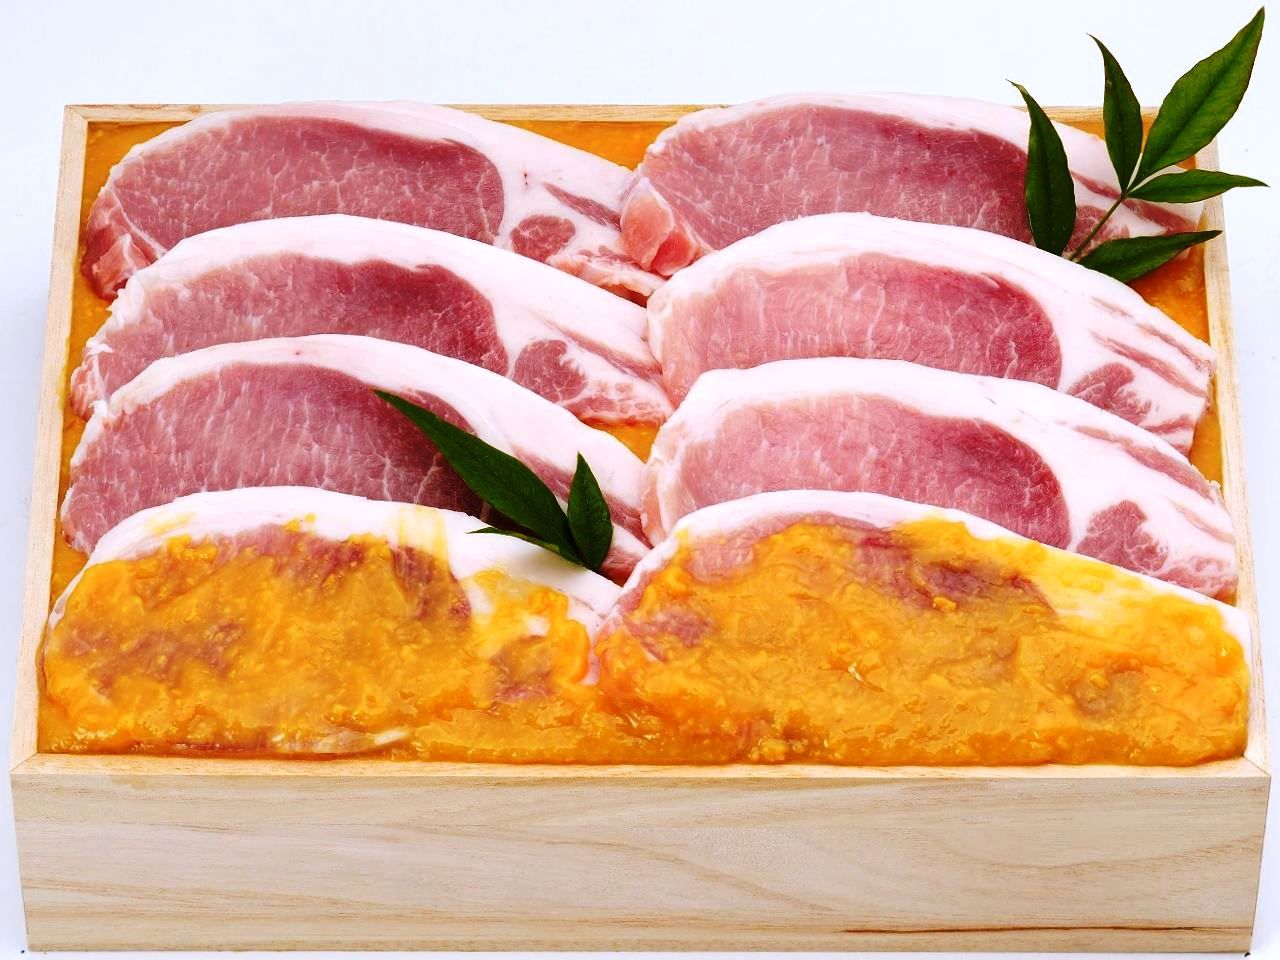 米澤豚一番育ち 糀味噌漬け | 米沢牛卸 肉の上杉 ギフトショップ